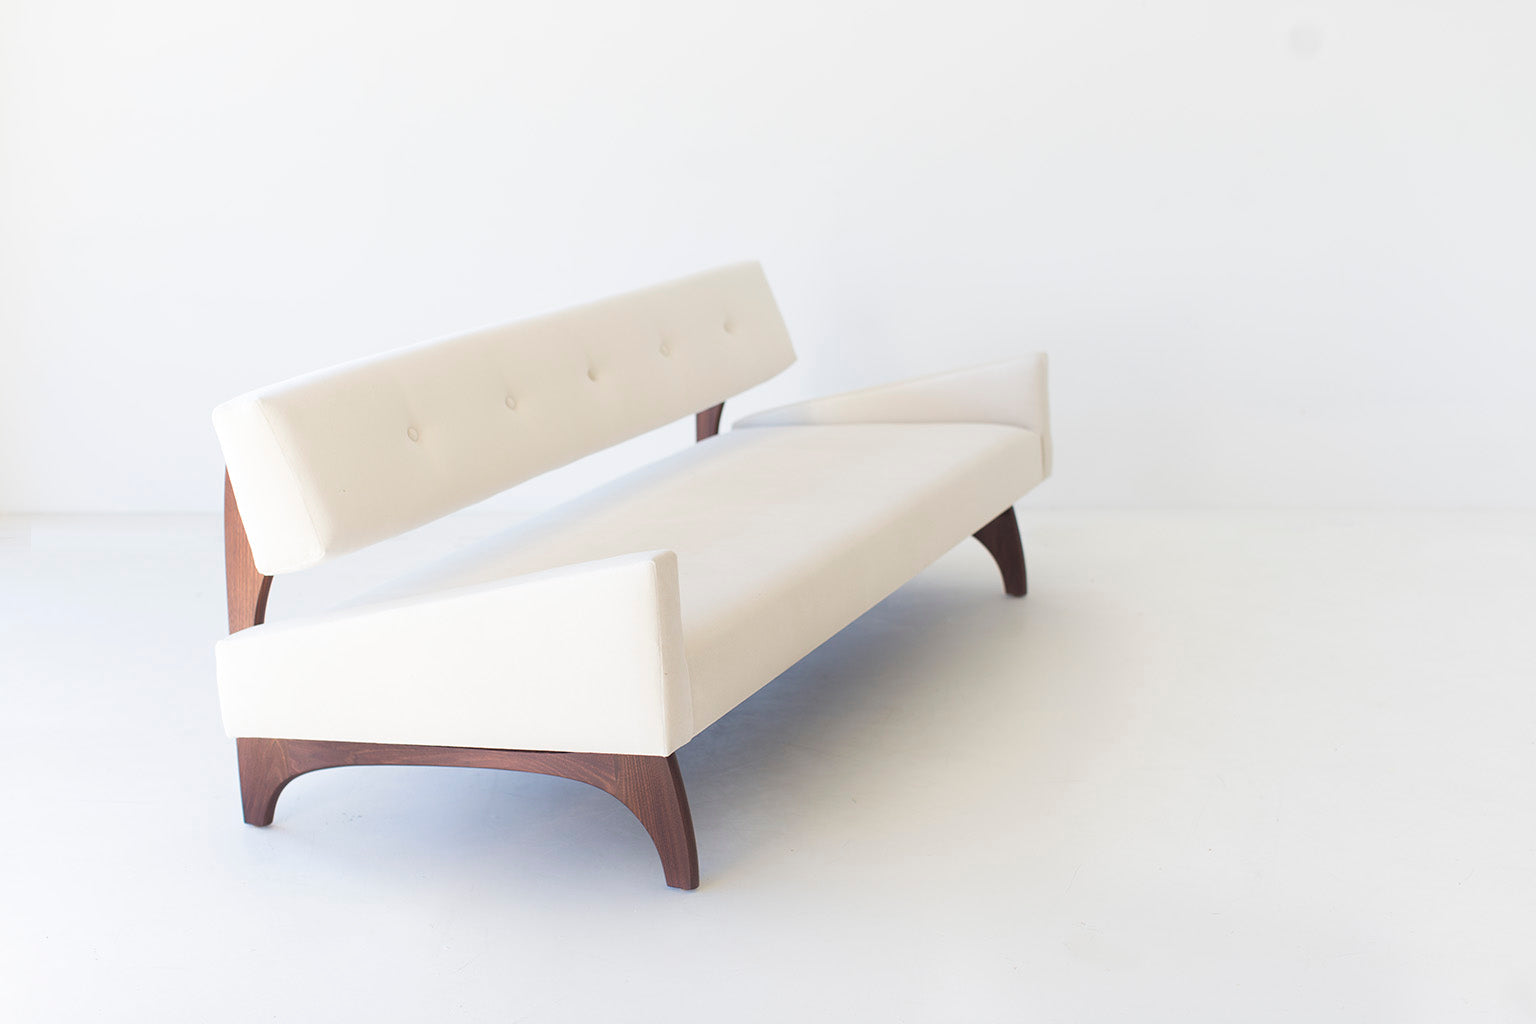 Canadian Modern Sofa in Walnut - 1601